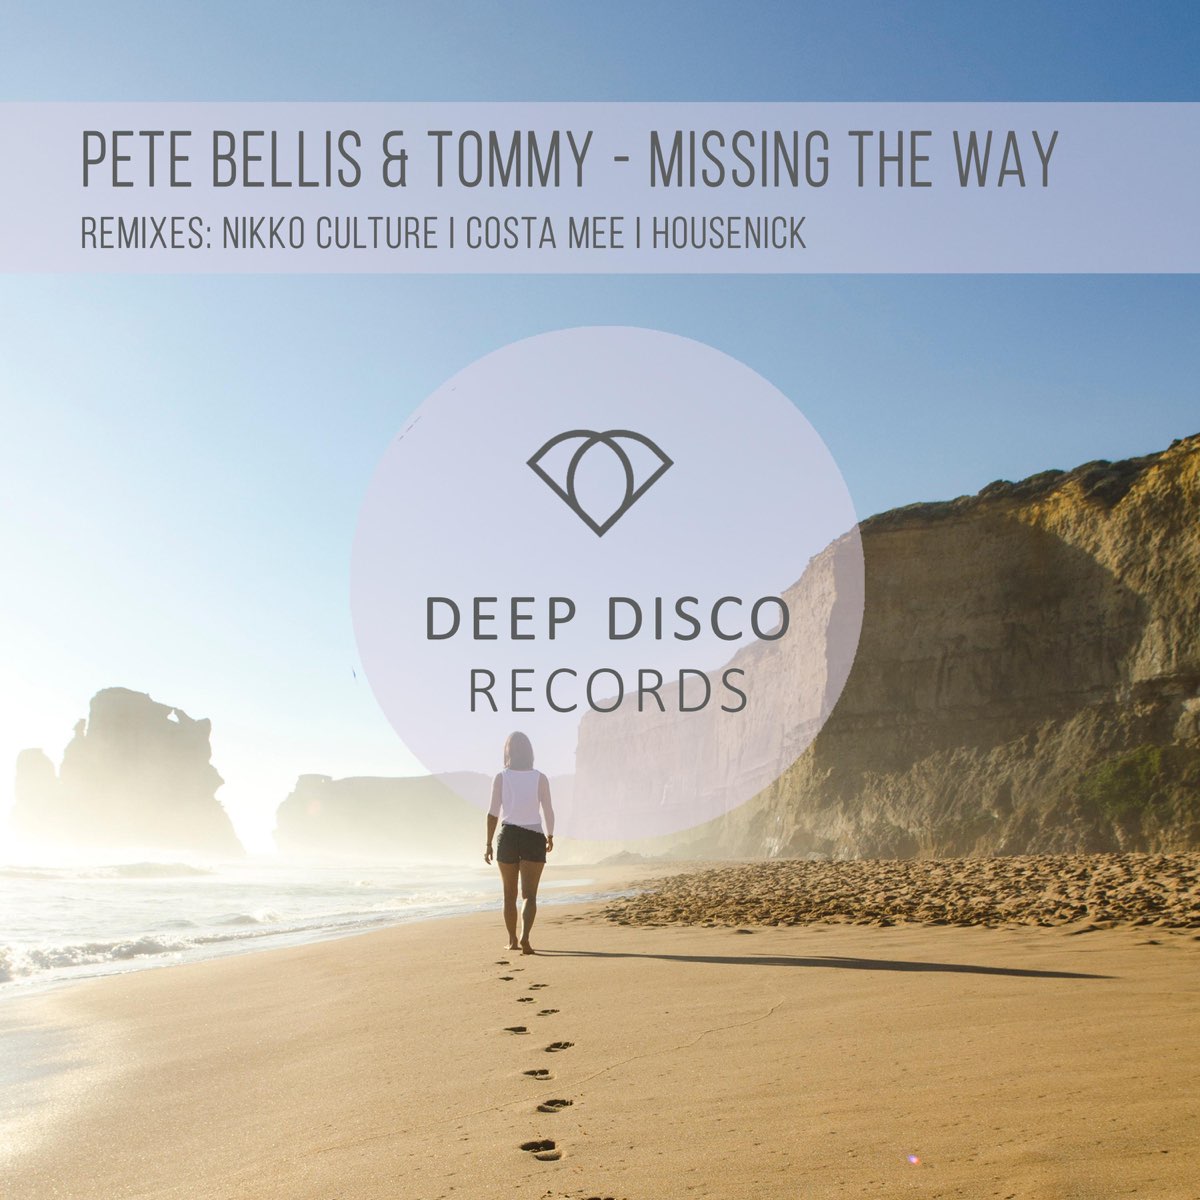 Pete Bellis Tommy missing the way. Pete Bellis & Tommy. Pete Bellis & Tommy - missing the way (Nikko Culture Remix). Nikko Culture Remix.